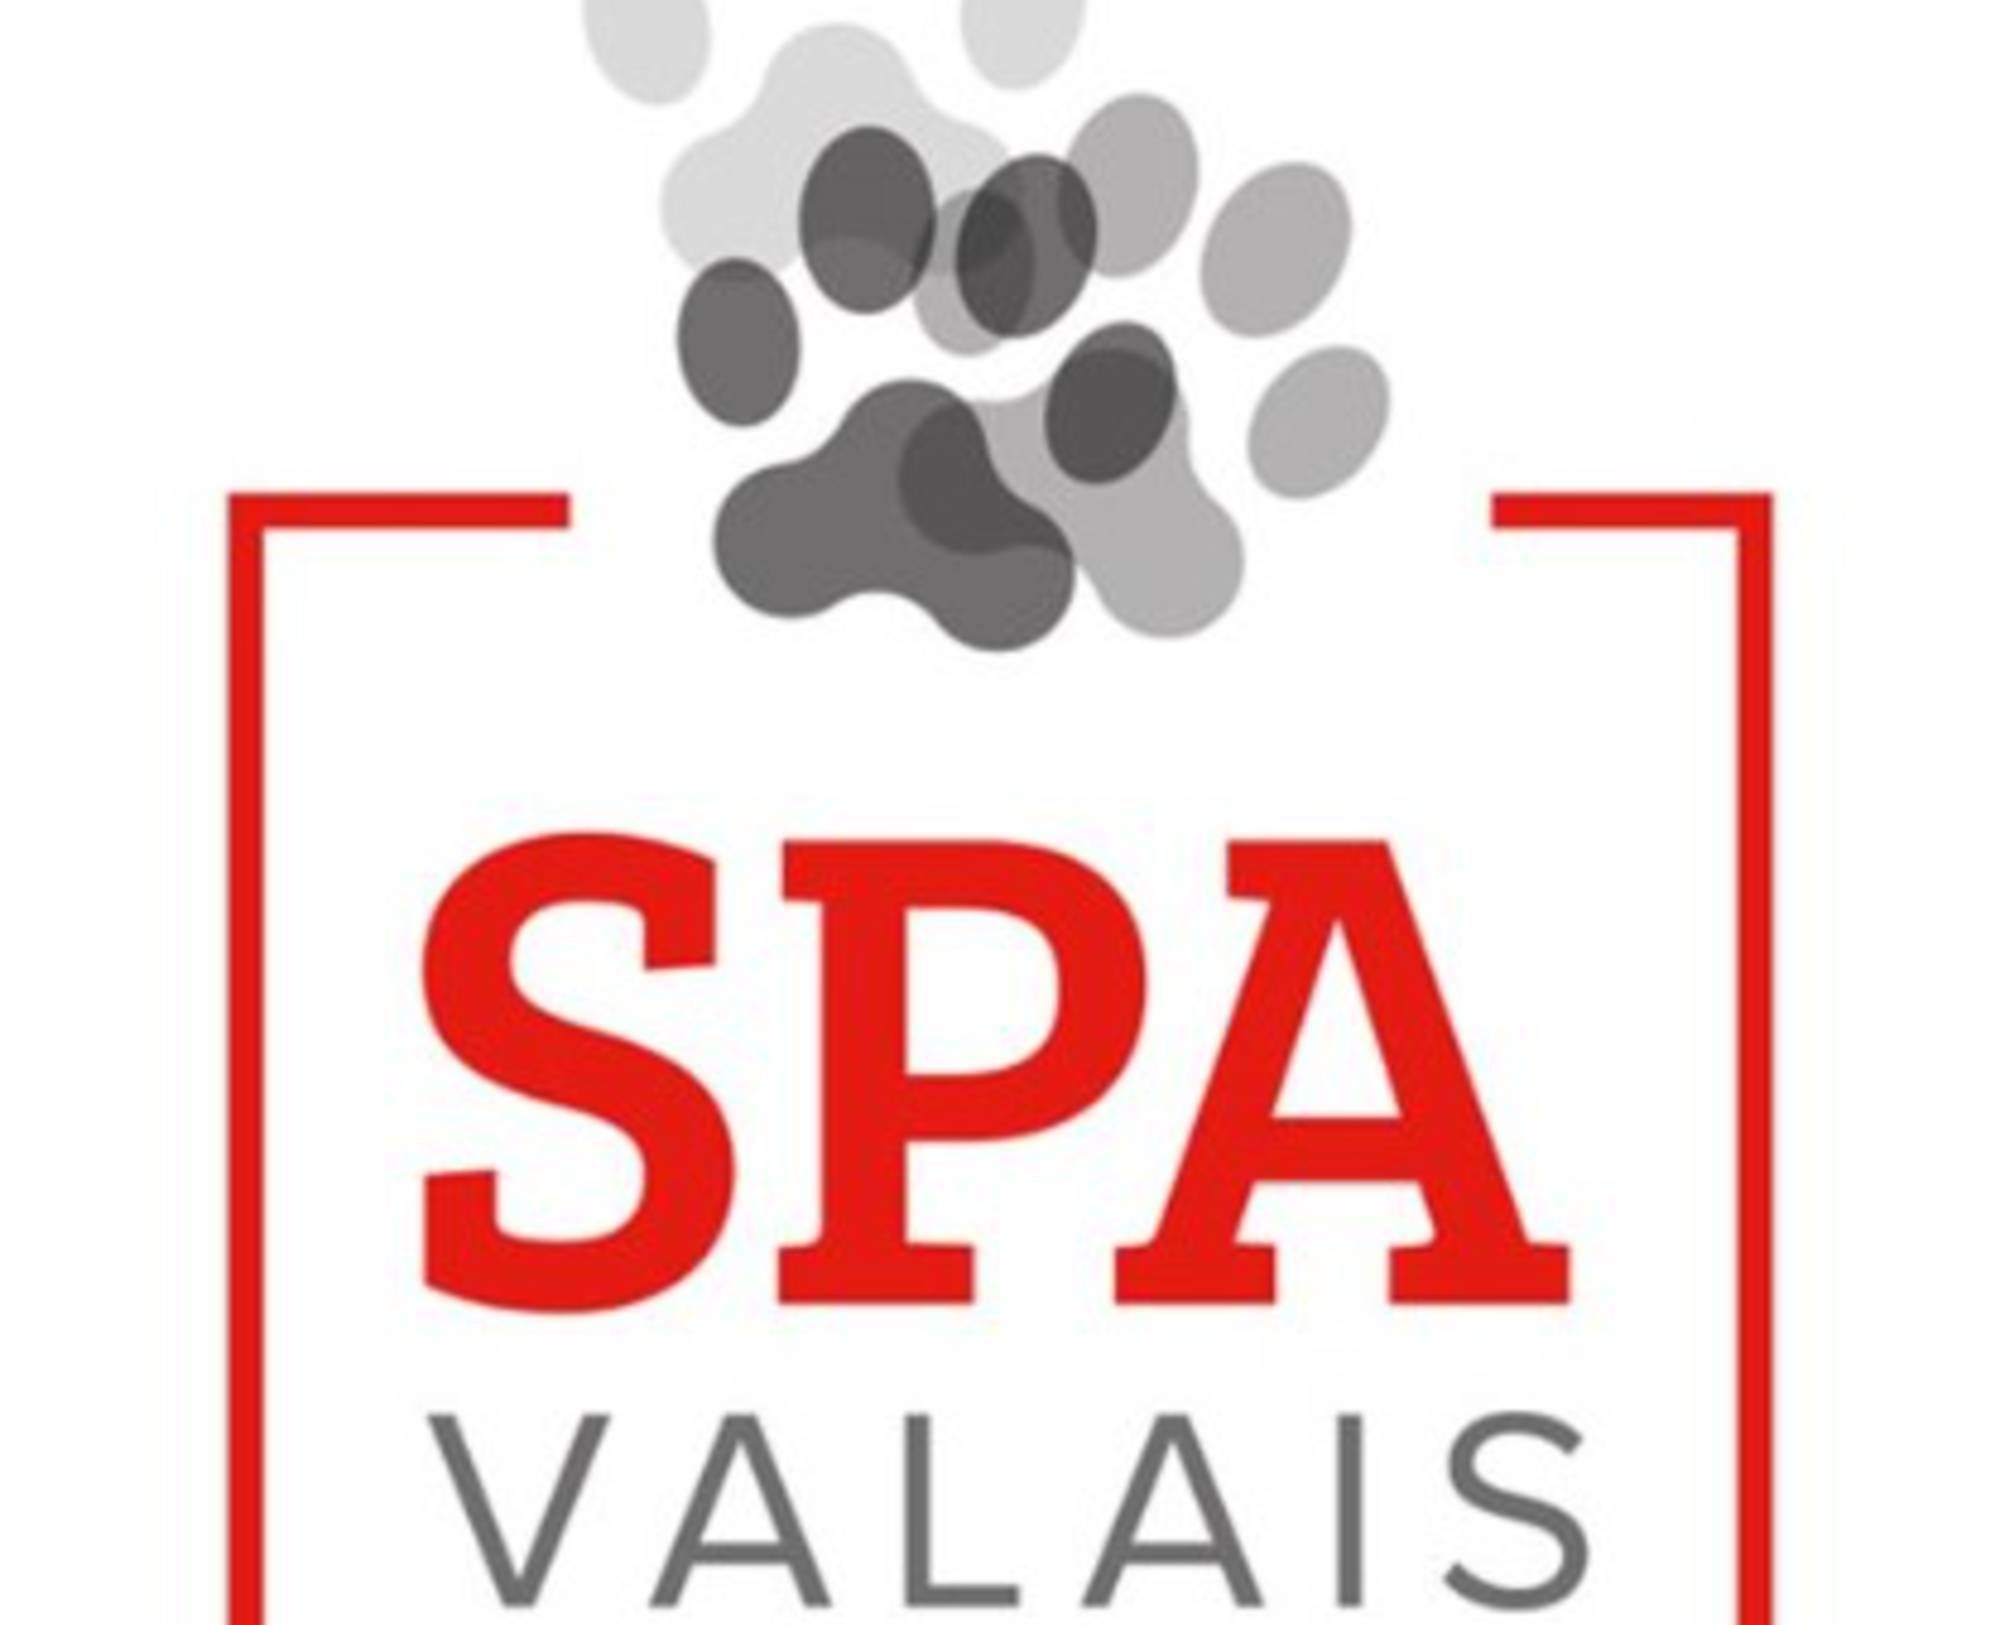 TSV Wallis